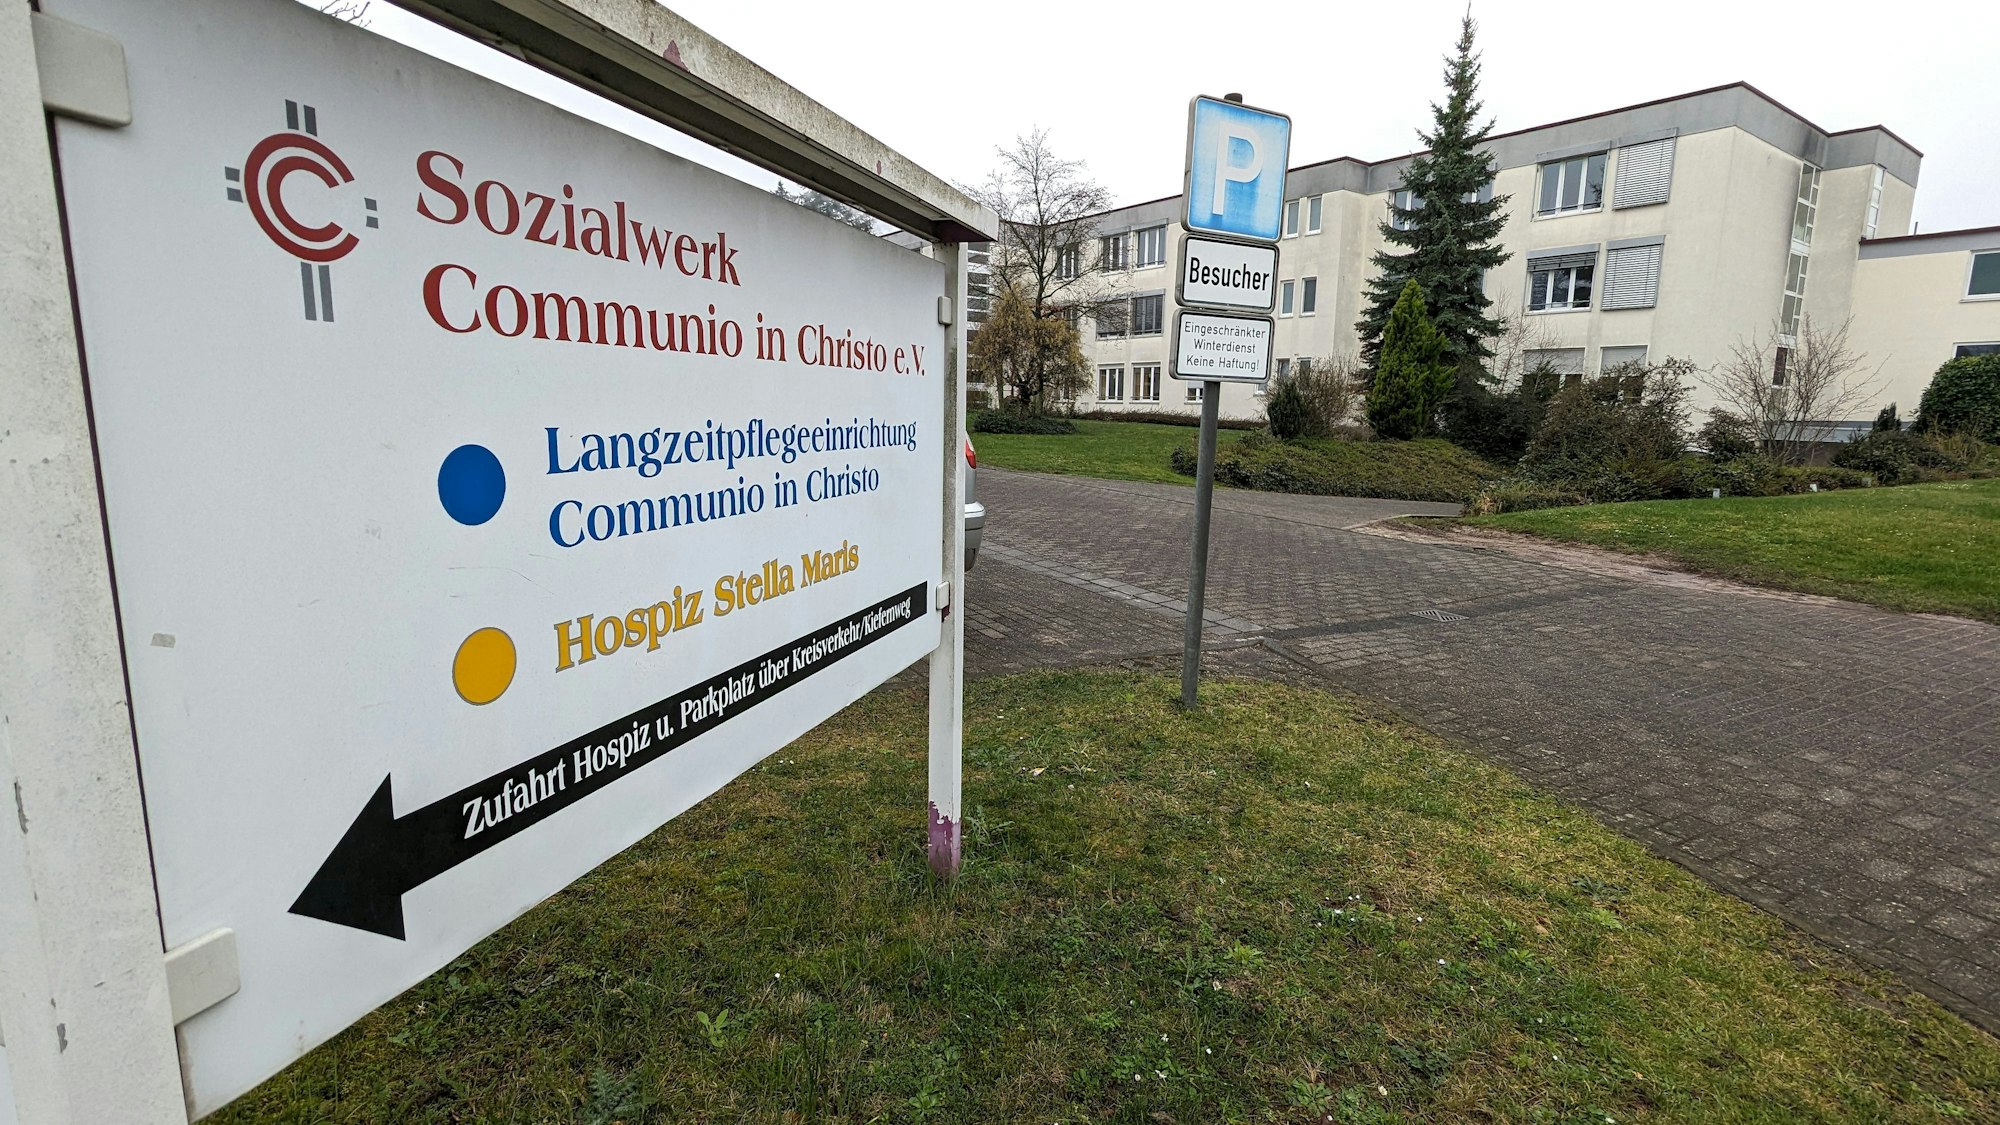 Neben einem Schild des Sozialwerks Communio in Christo e.V. in Mechernich ist das Pflegeheim zu sehen, das der Verein dort betreibt.